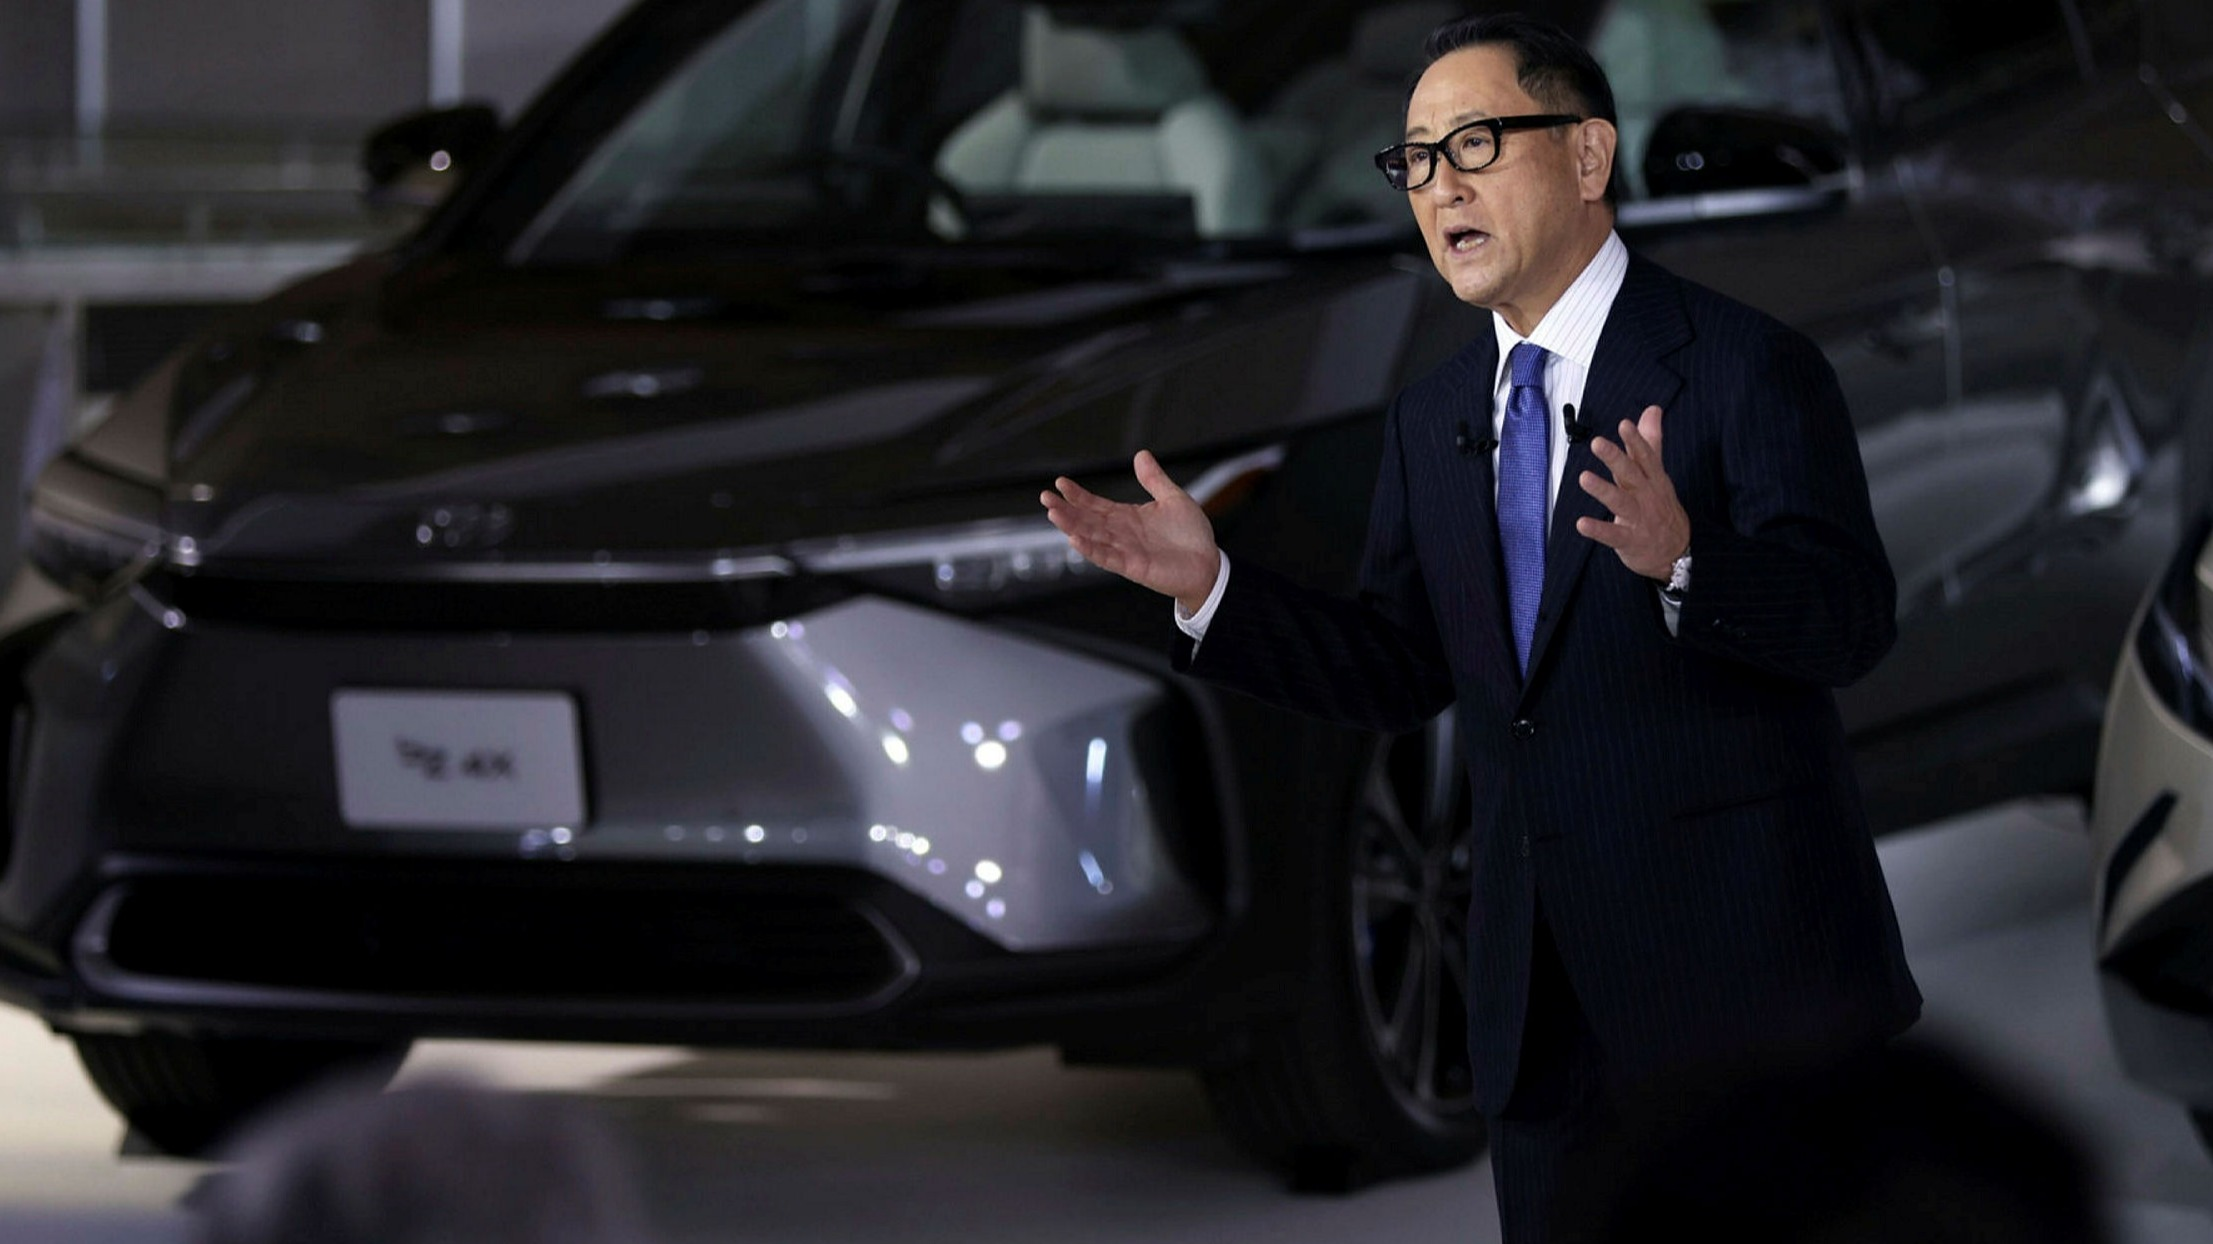 Nhãn hiệu Lexus sẽ đi đầu trong quá trình điện hóa của Toyota, theo chủ tịch Akio Toyoda.